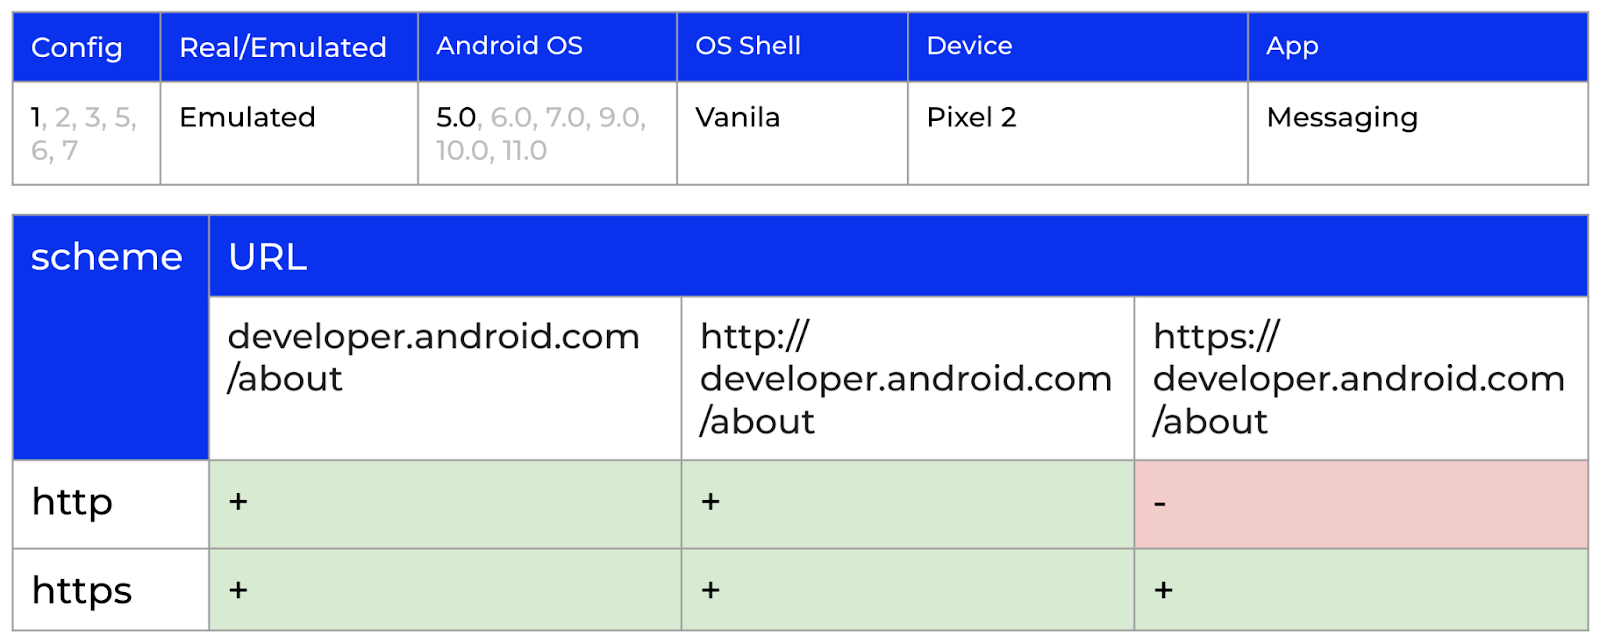 Результаты проверки гипотезы о влиянии версии Android ОС для 5.0, 6.0, 7.0, 9.0, 10.0, 11.0.
